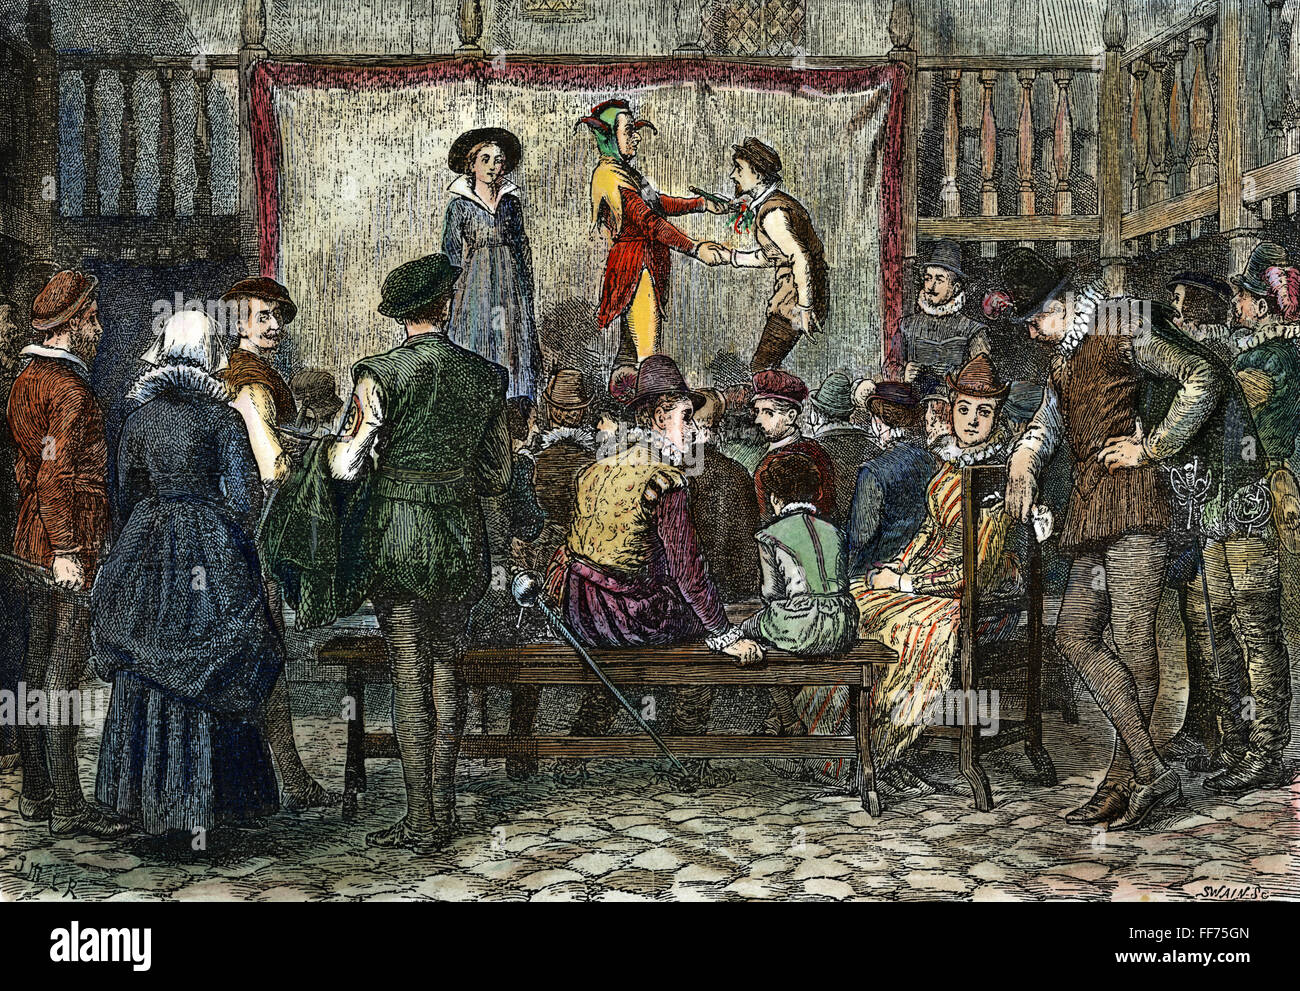 ELIZABETHAN Theatre. /NA prestazioni di un gioco in cantiere di un London Inn durante il regno della regina Elisabetta I. incisione su legno, inglese, 1876. Foto Stock